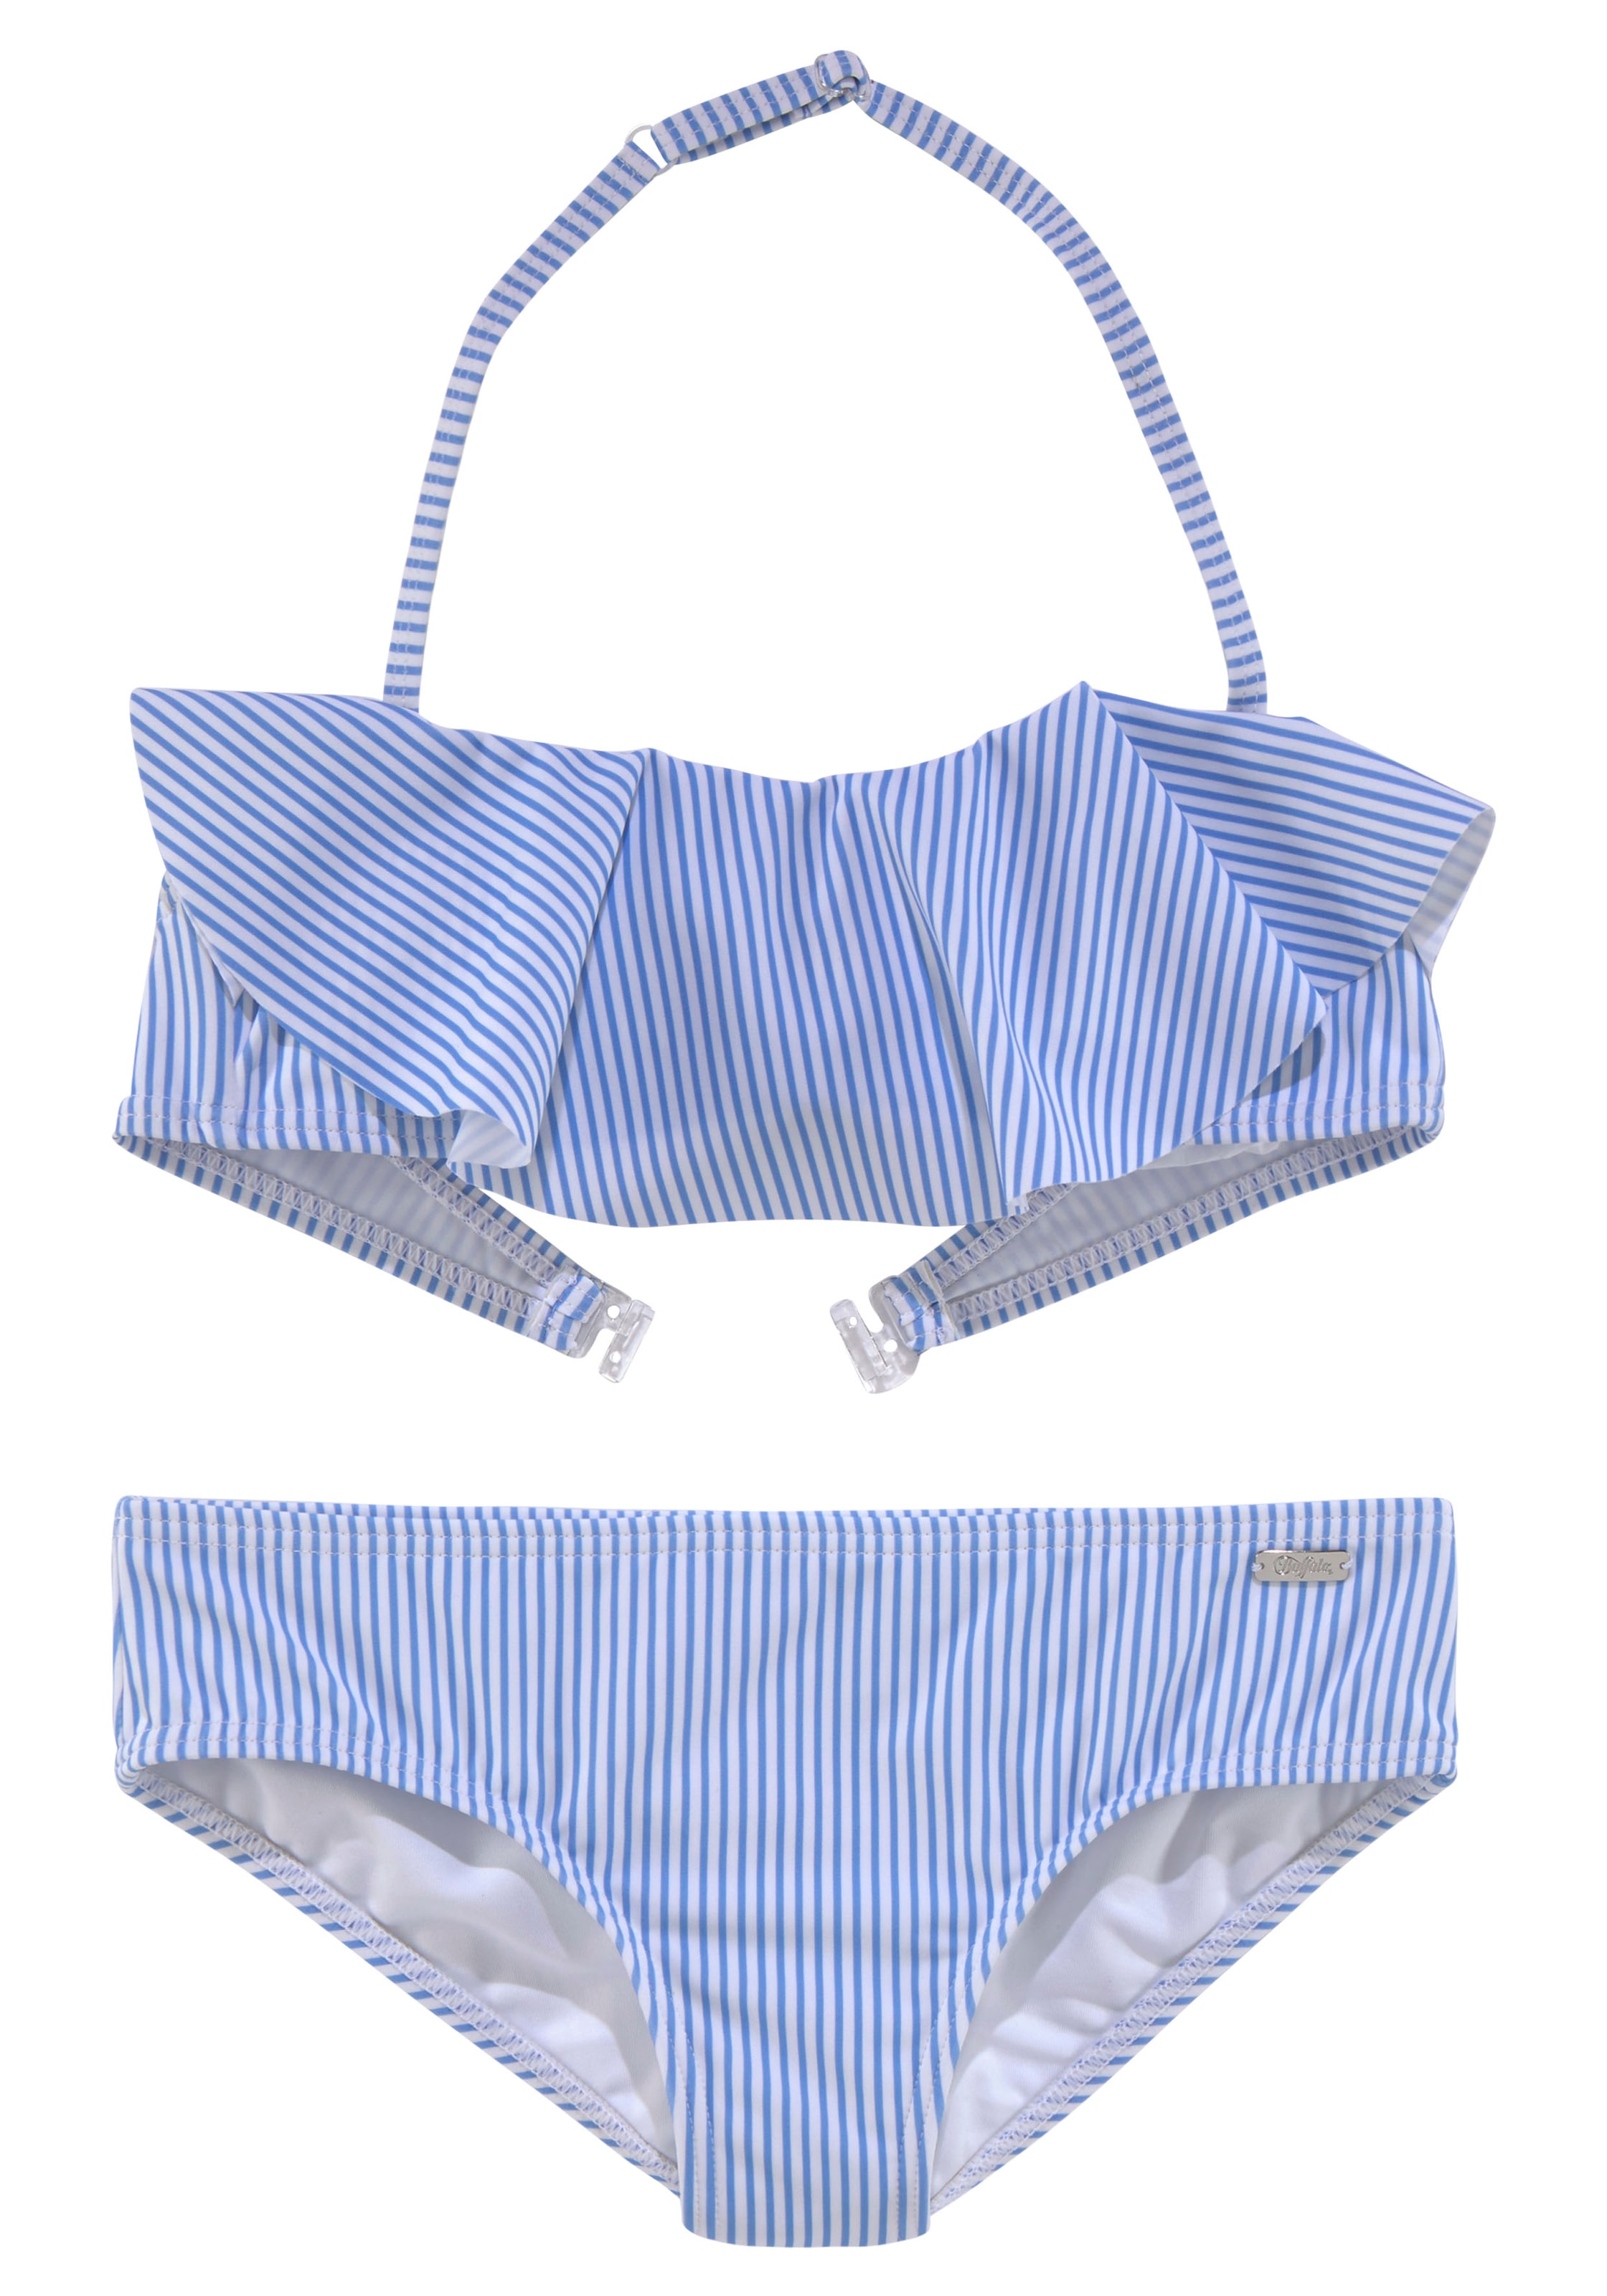 Buffalo Bandeau-Bikini, mit Streifendesign bei sommerlichem